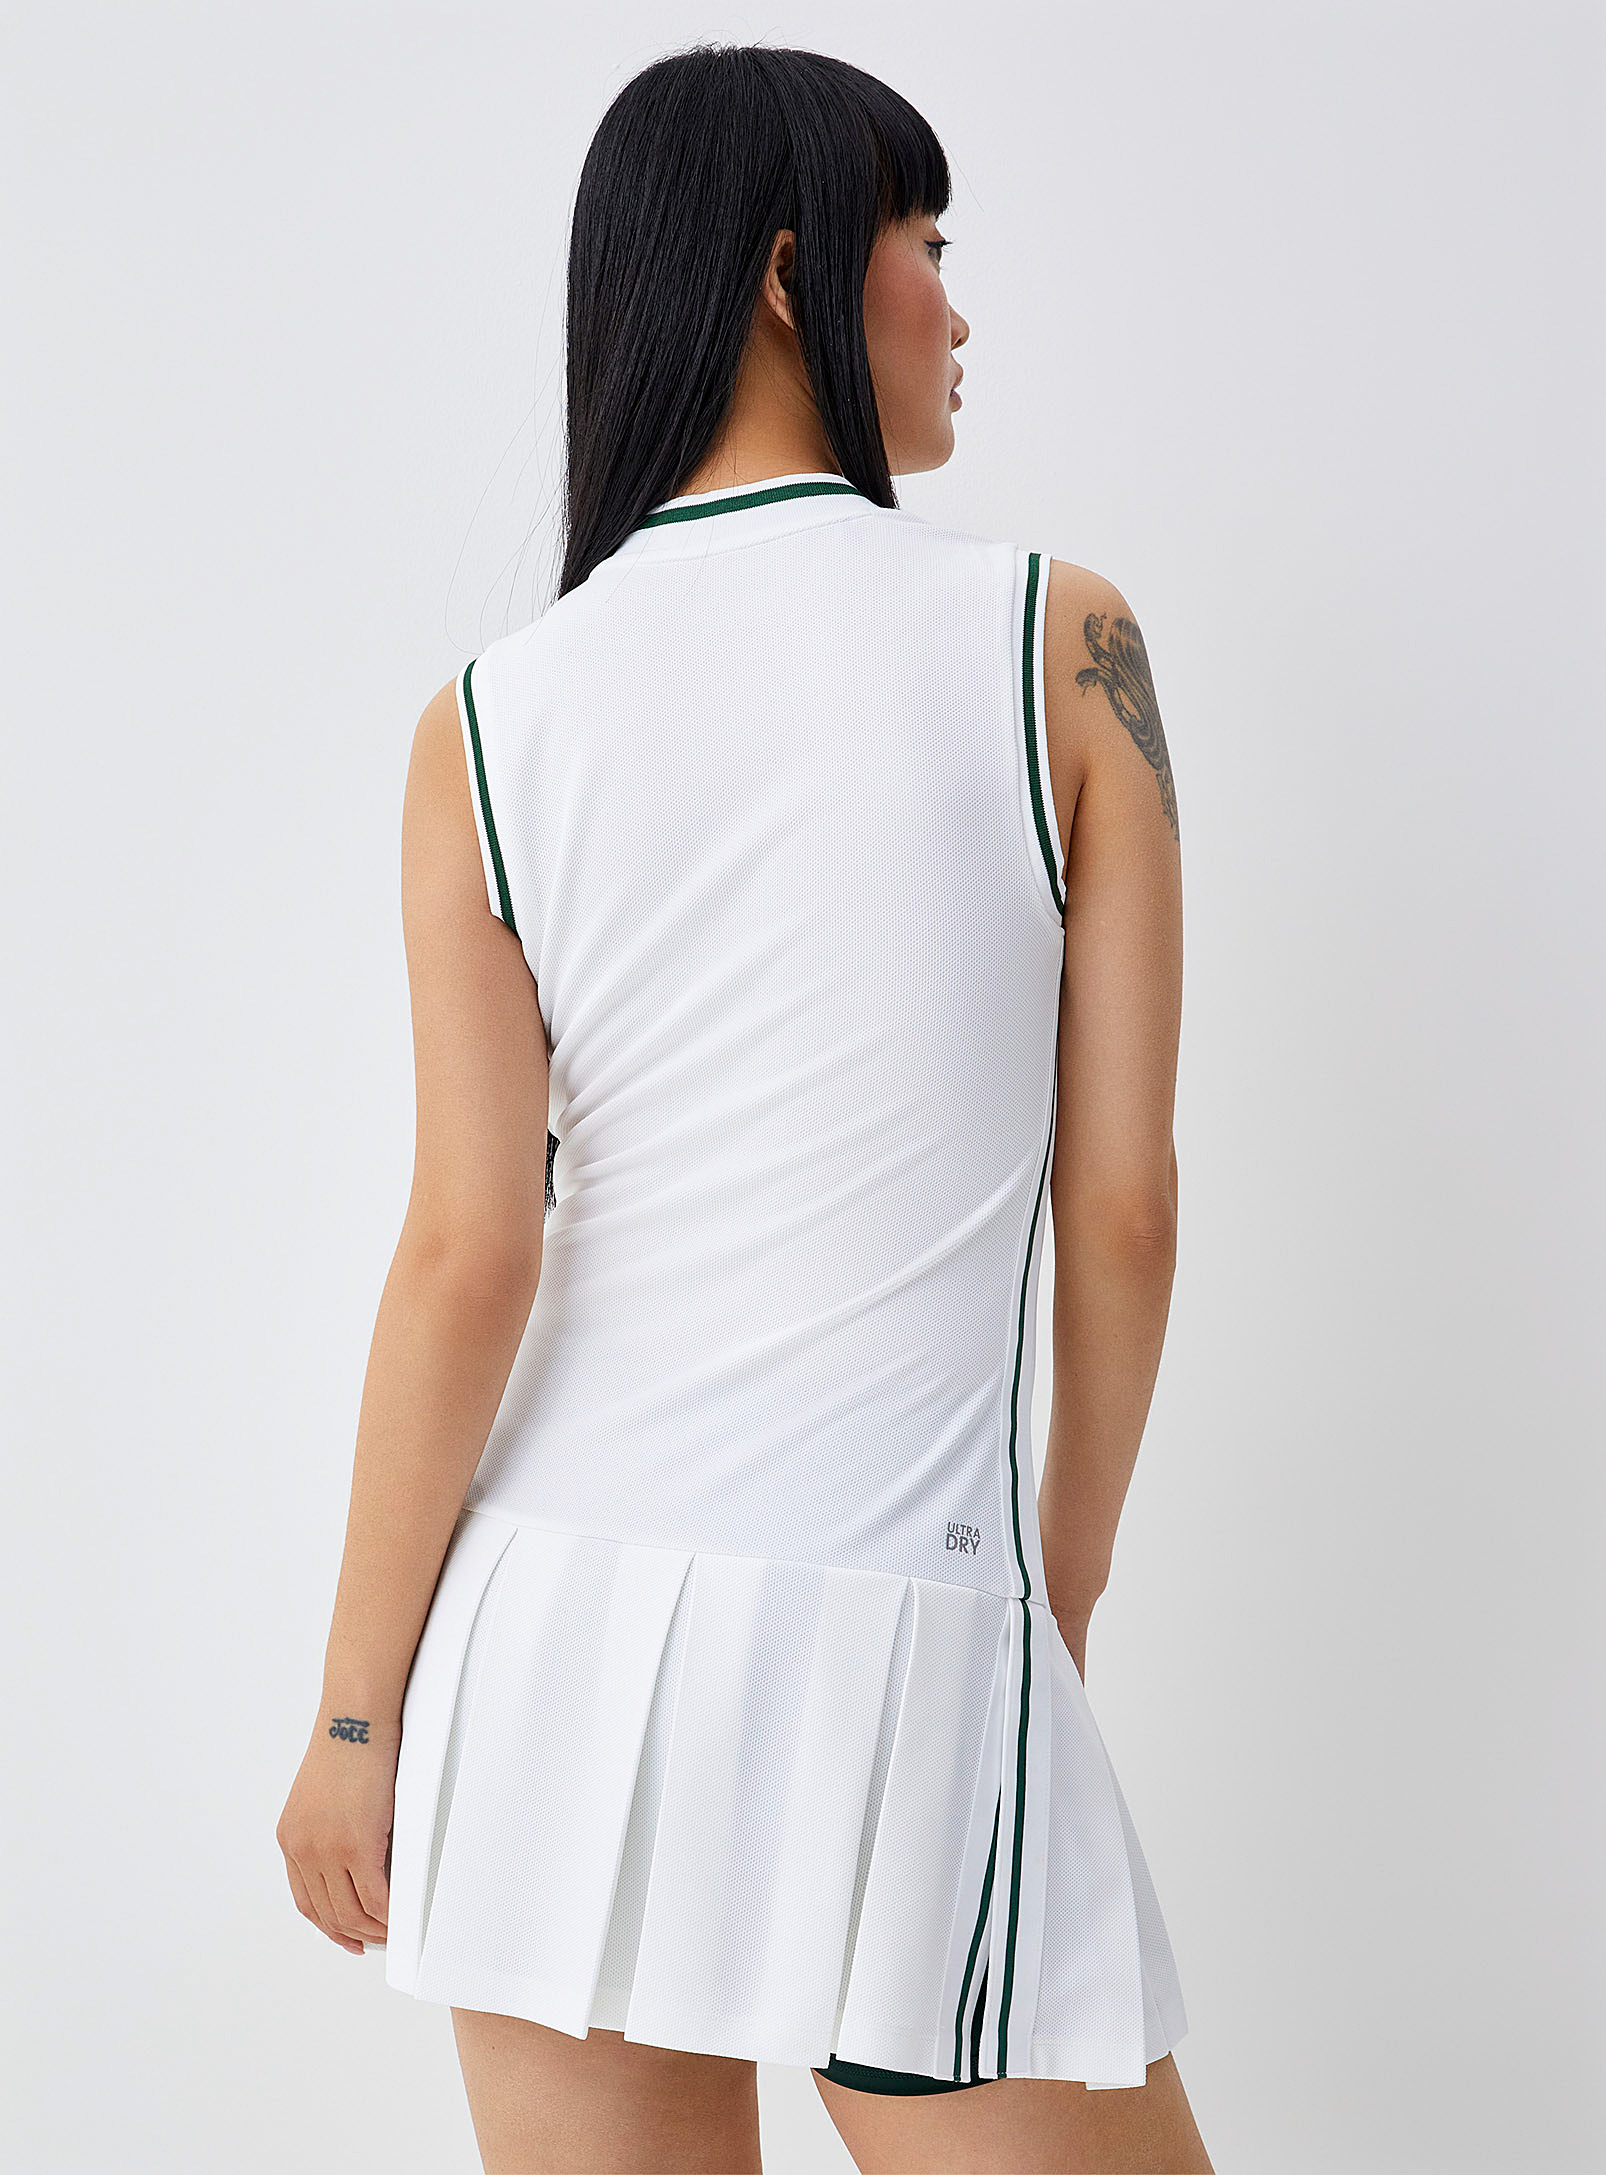 Lacoste - La robe tennis bandes rayées